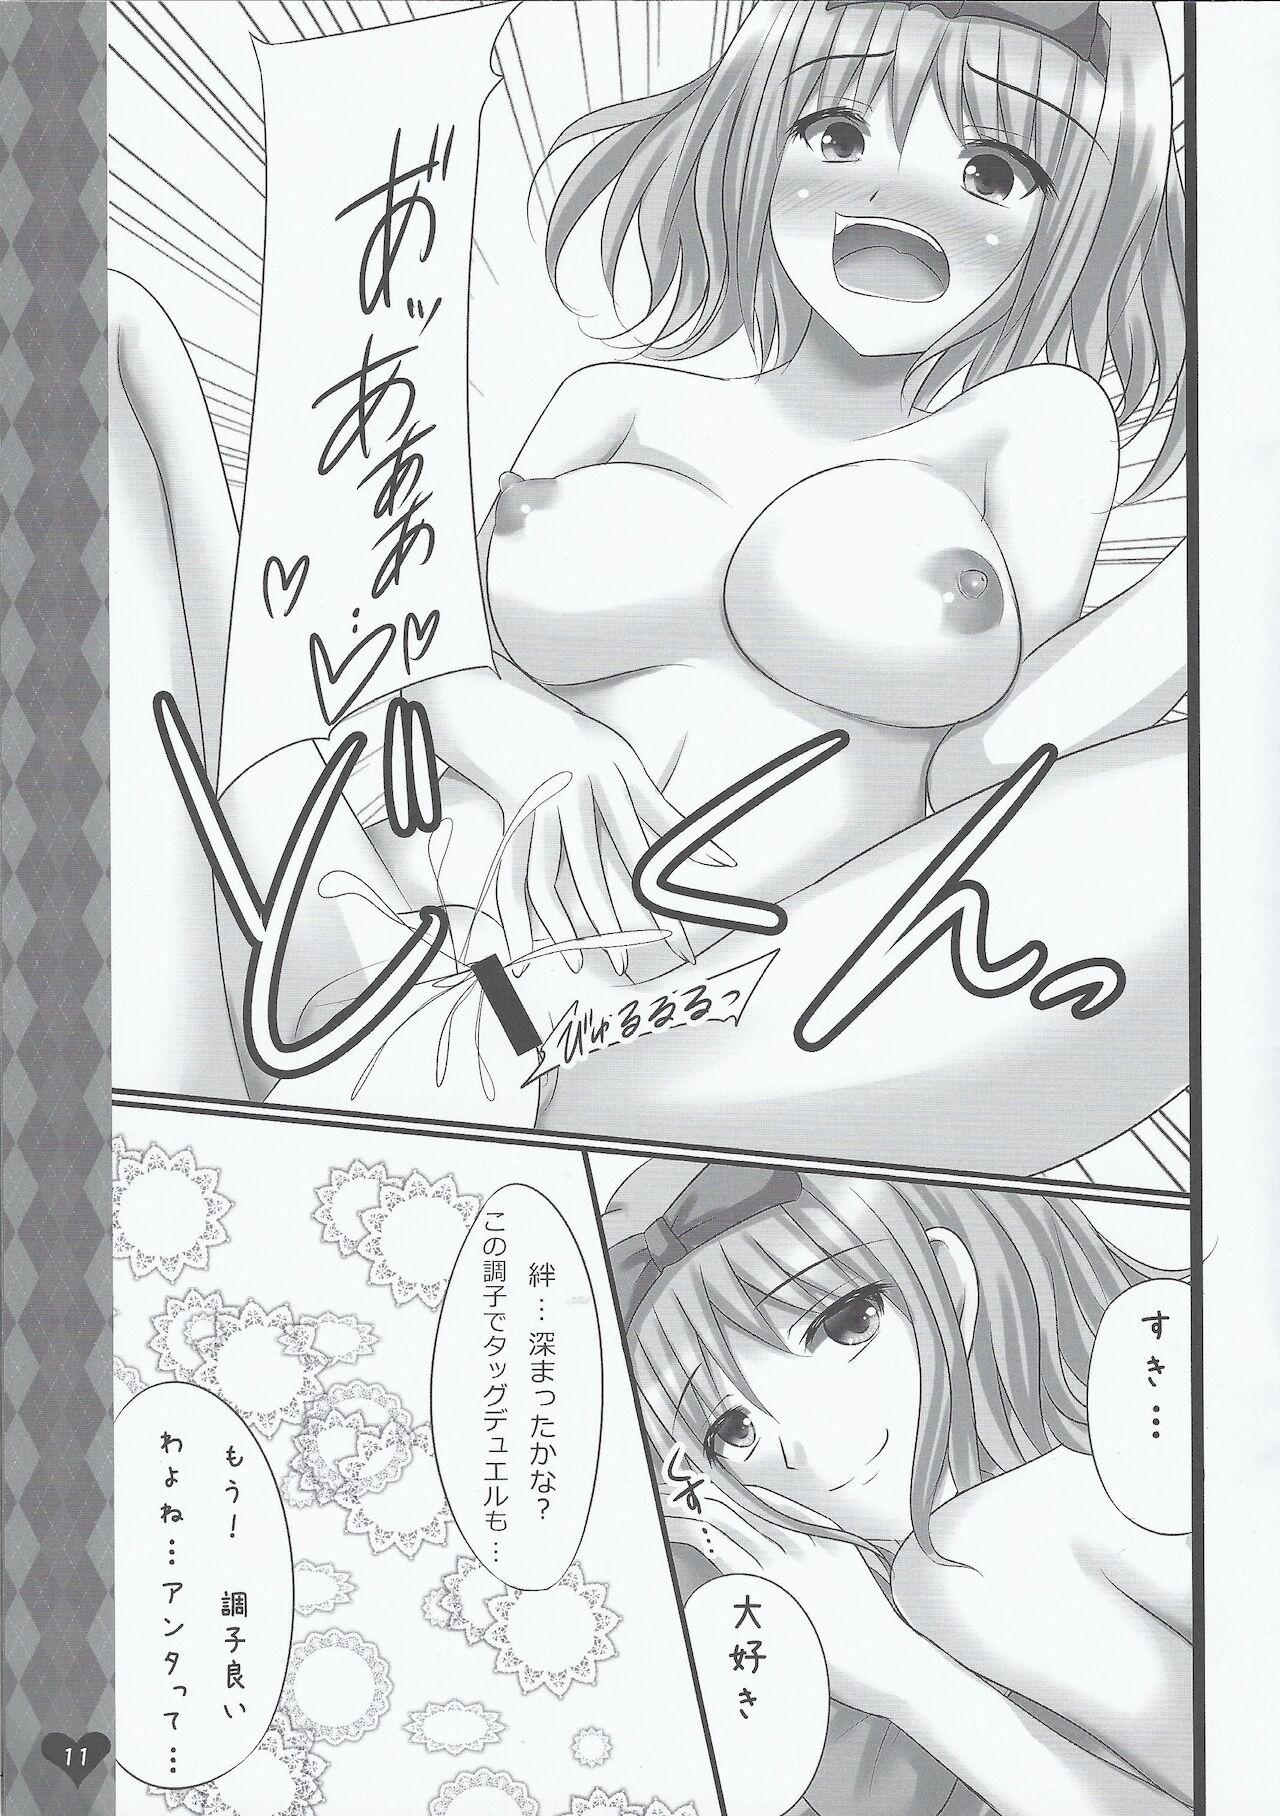 Perfect Girl Porn Tsuan ya Yukino Tora bura busuru hon - Yu-gi-oh Yu-gi-oh 5ds Cop - Page 10